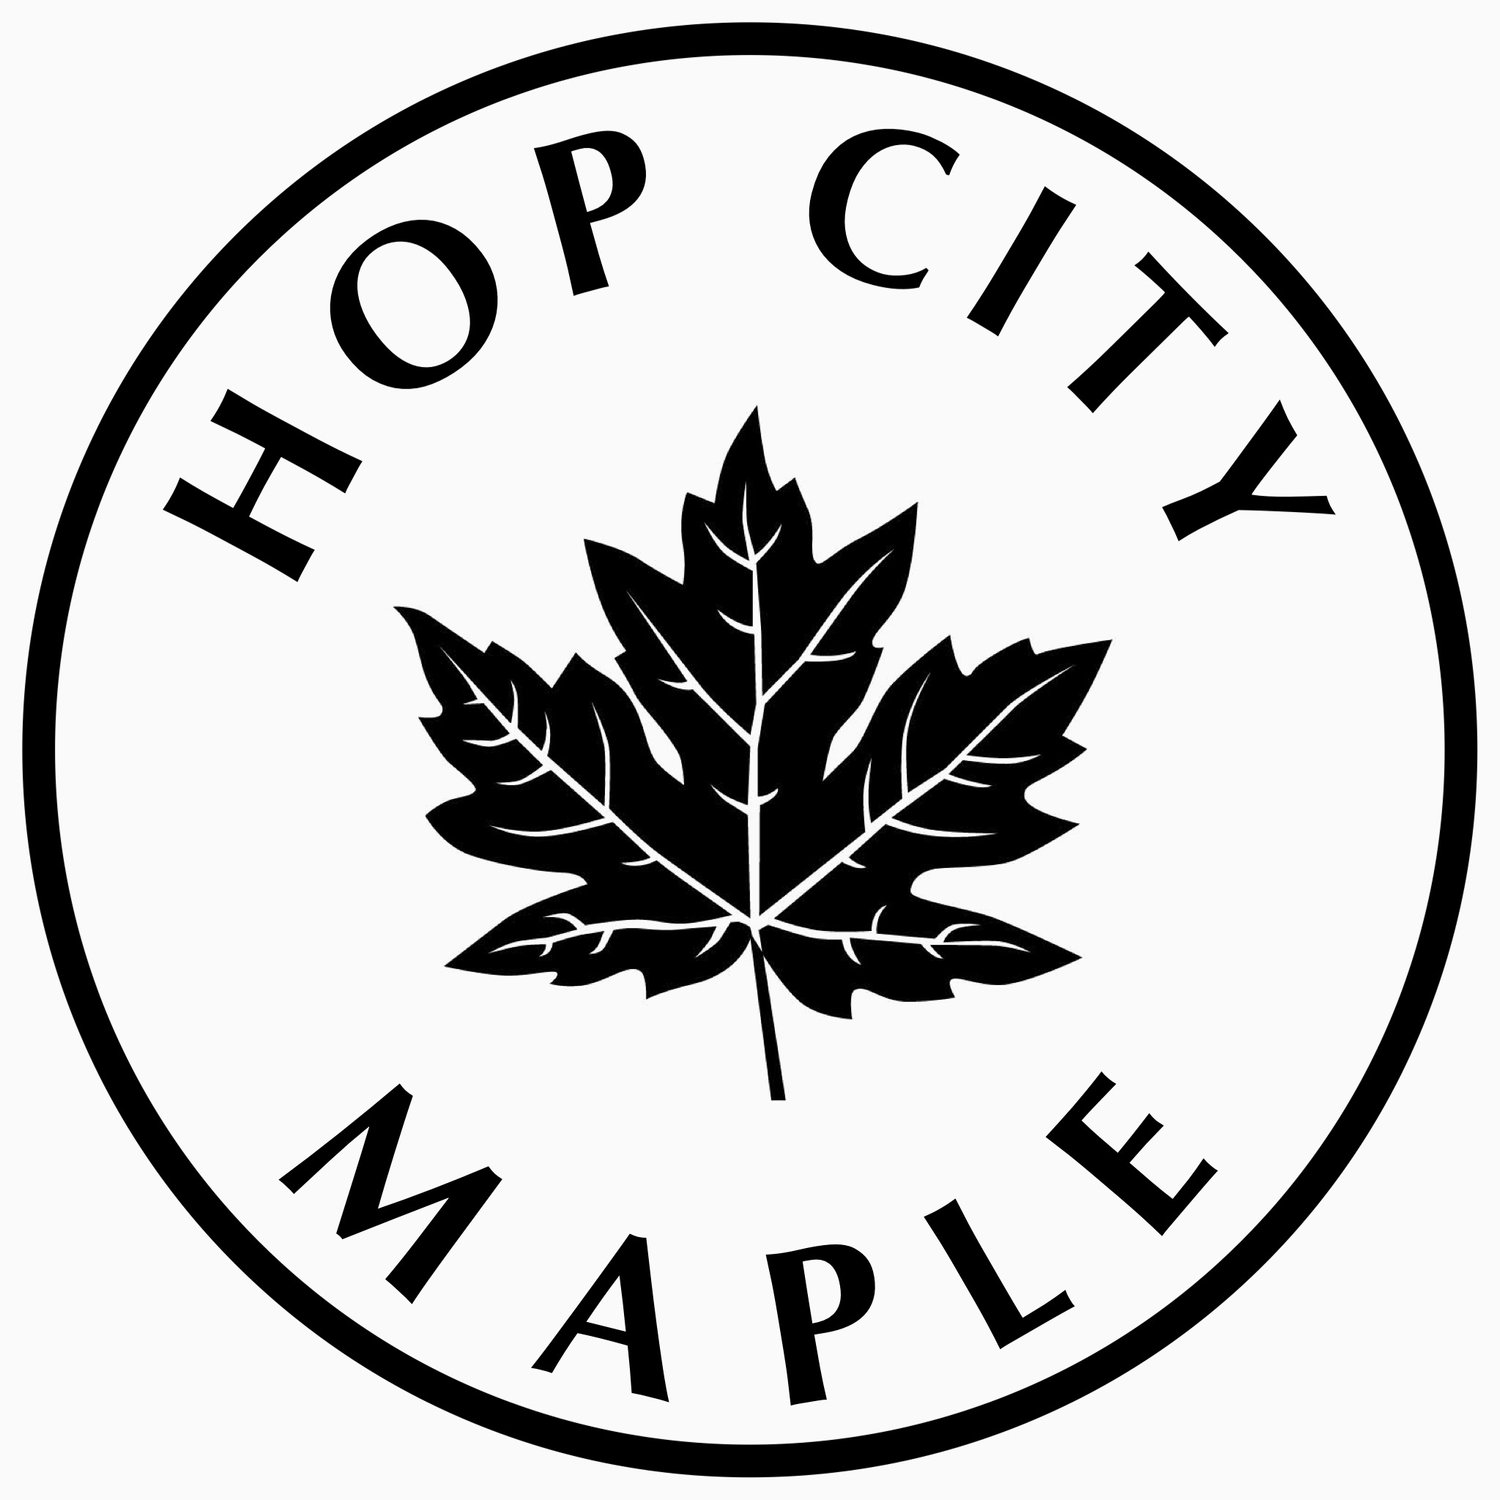 Hop City Maple